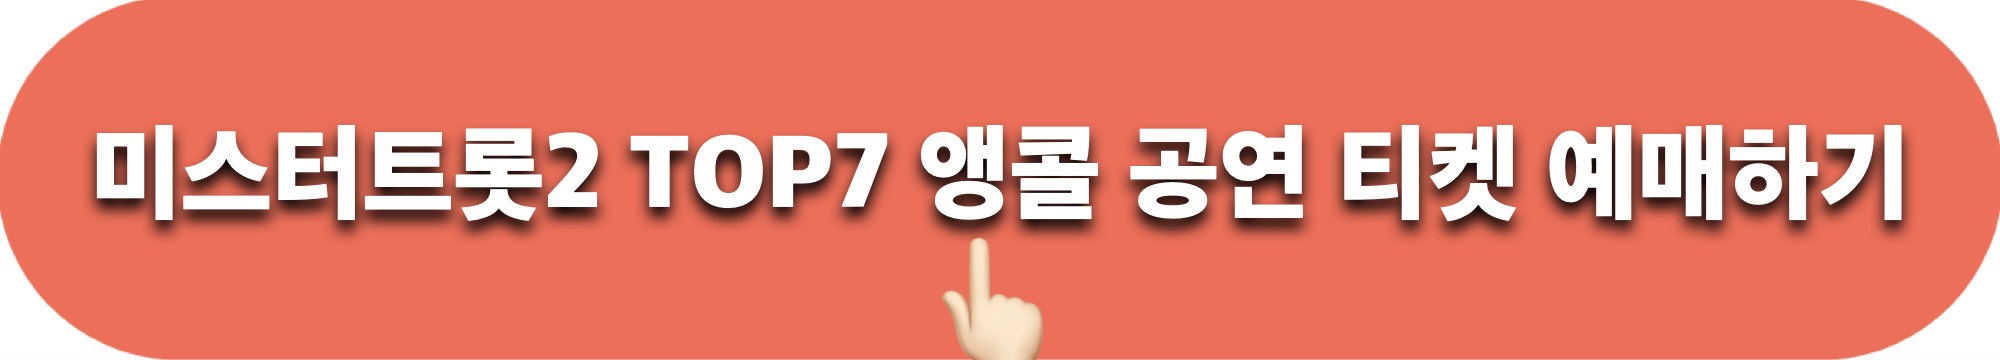 미스터트롯2_TOP7콘서트_앵콜공연_티켓예매_바로가기